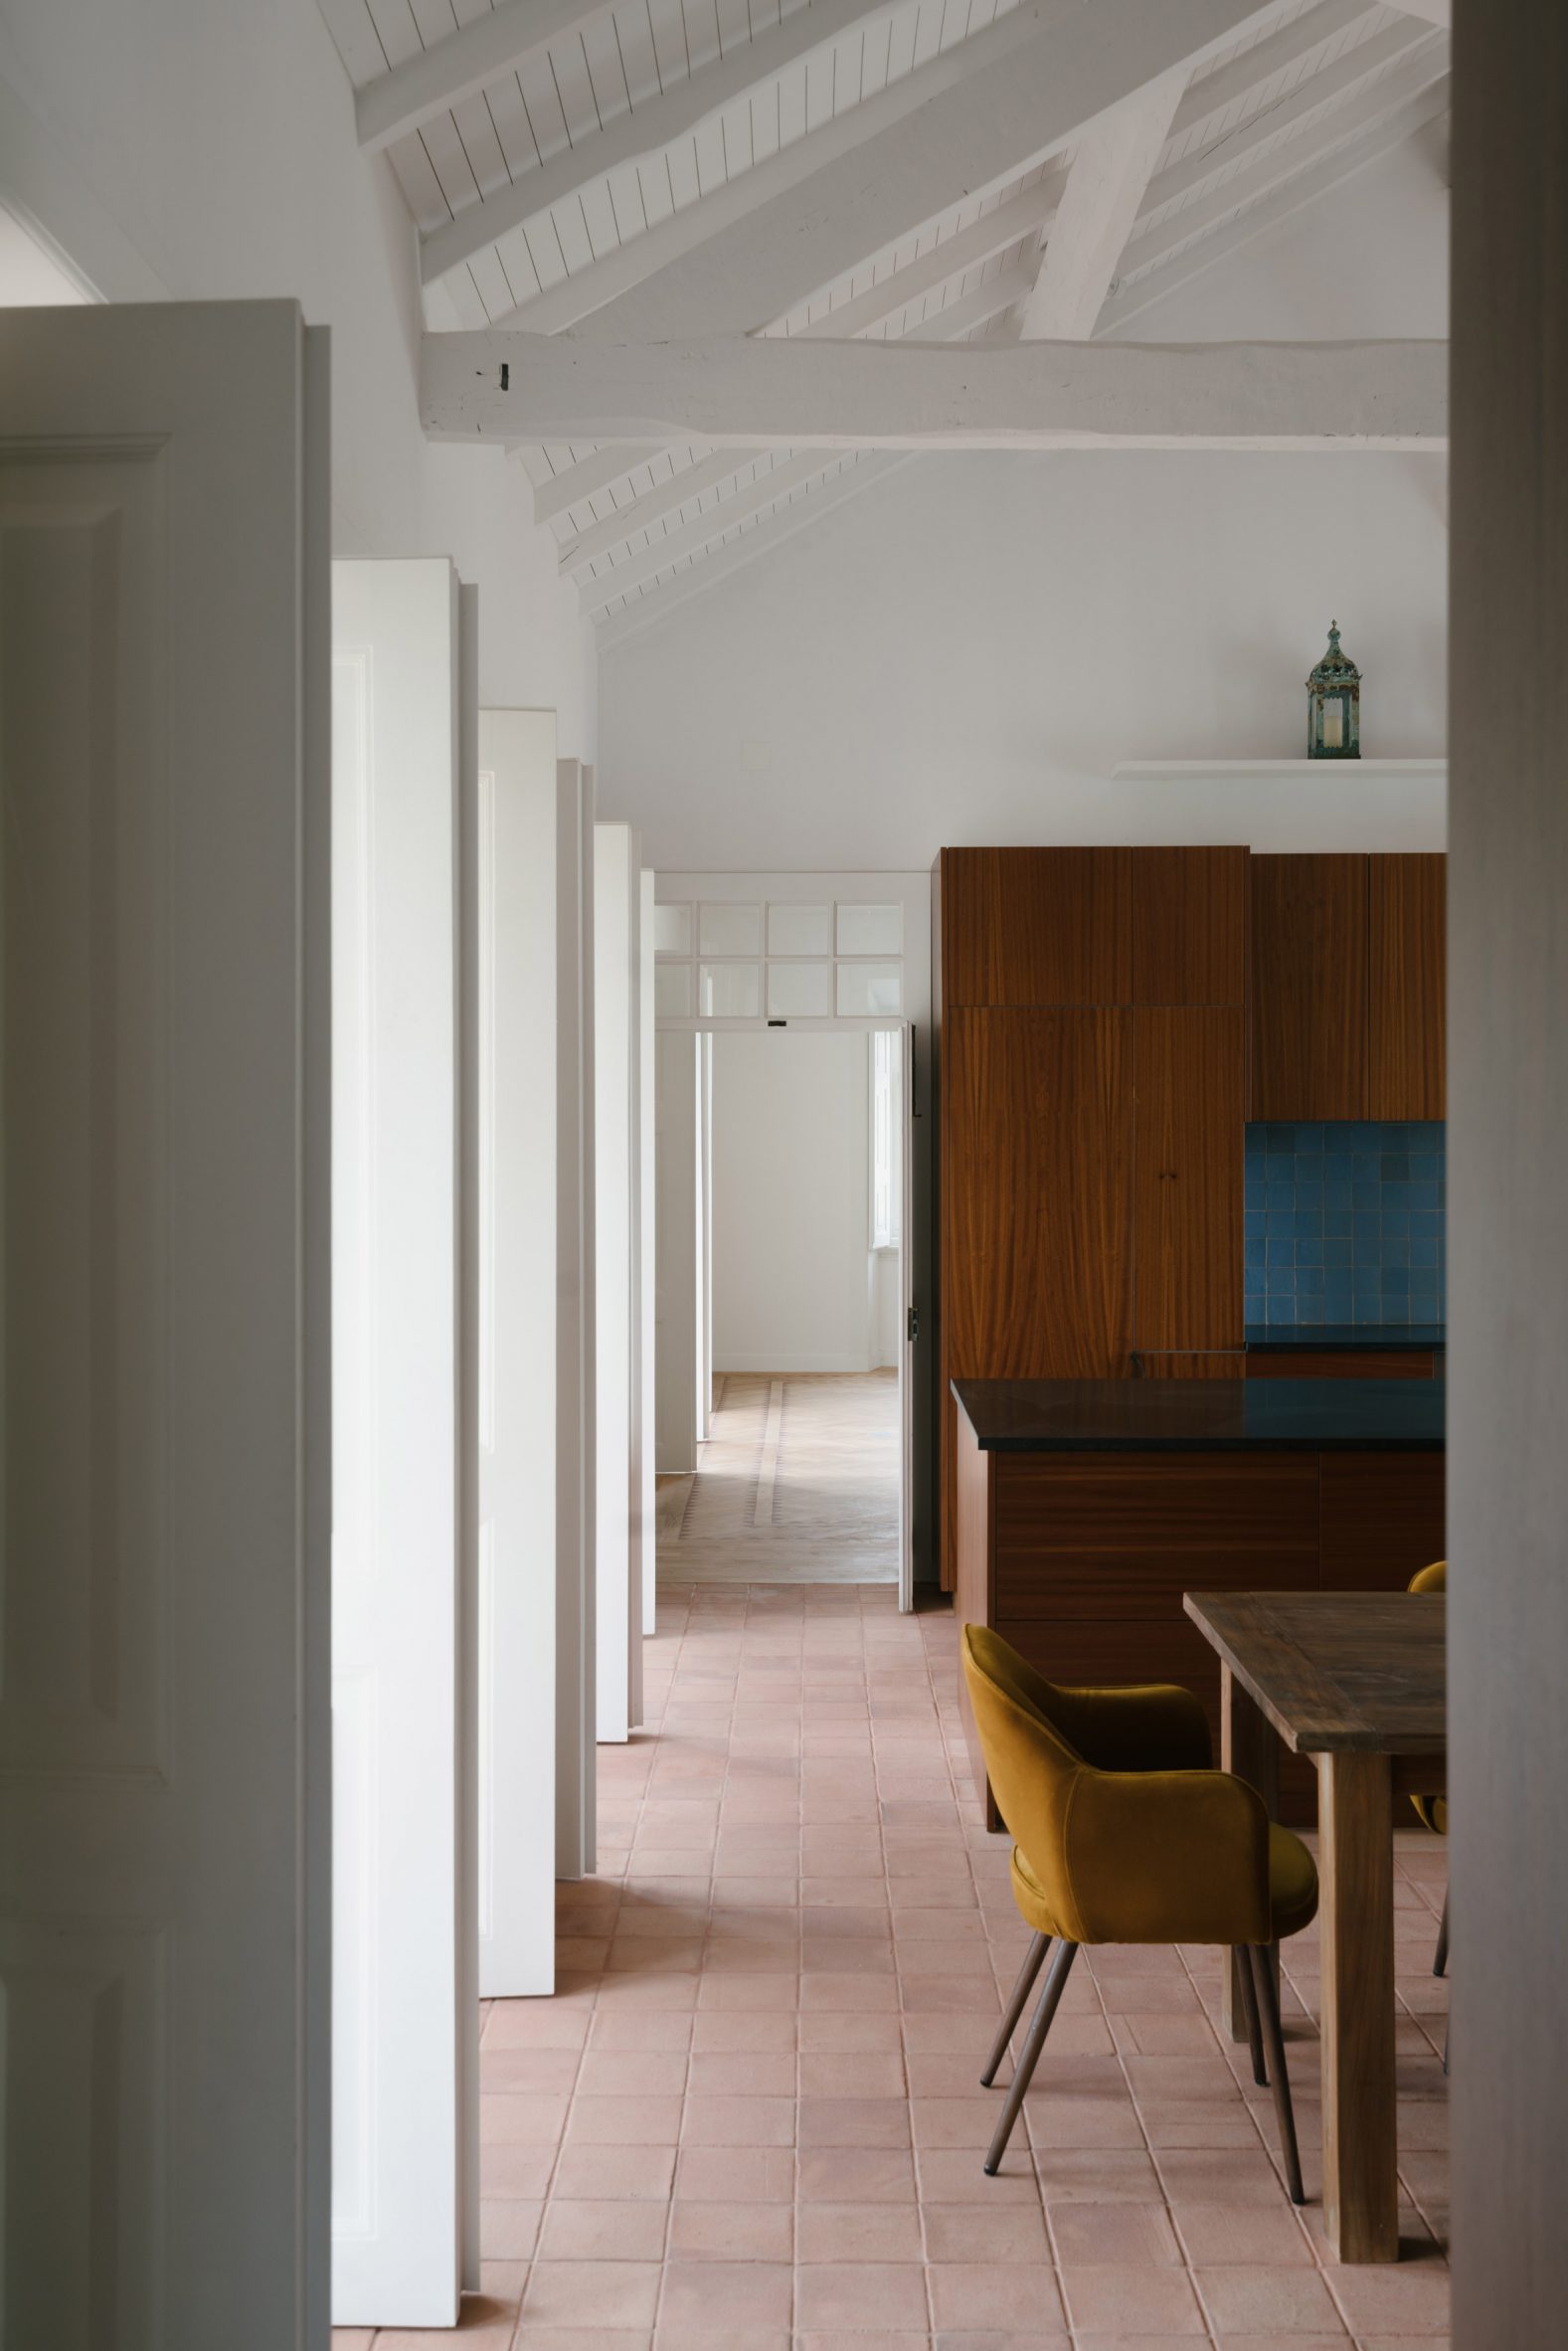 Casa Mãe white-walled interior by Atelier Data